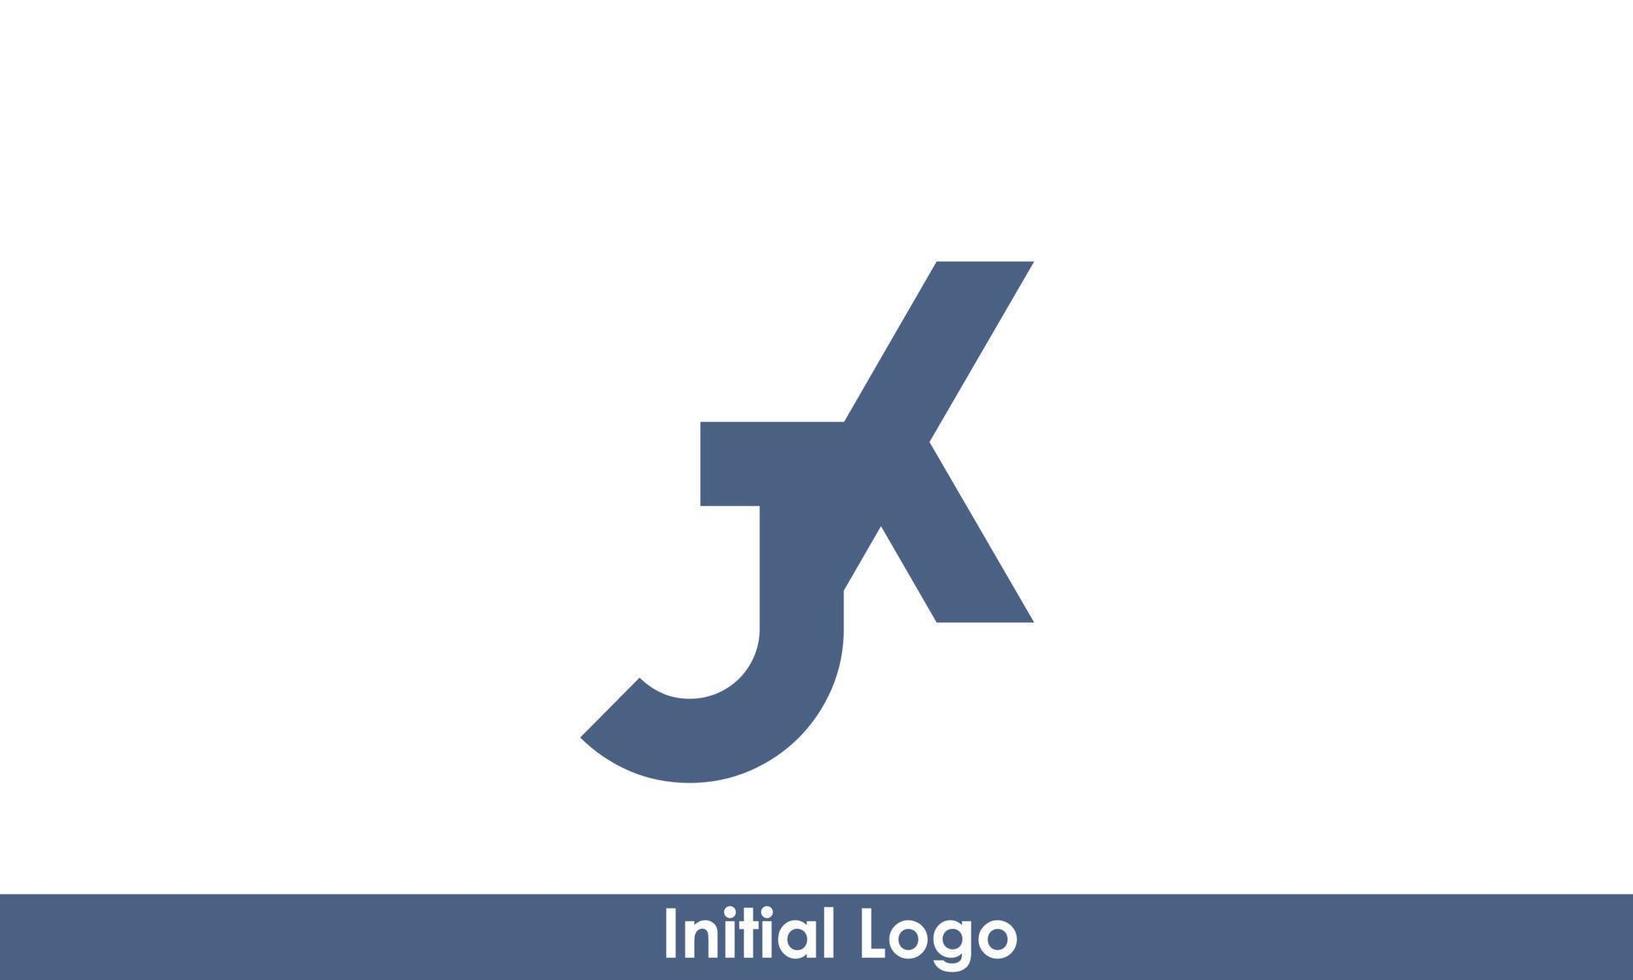 alfabetet bokstäver initialer monogram logotyp jk, kj, j och k vektor